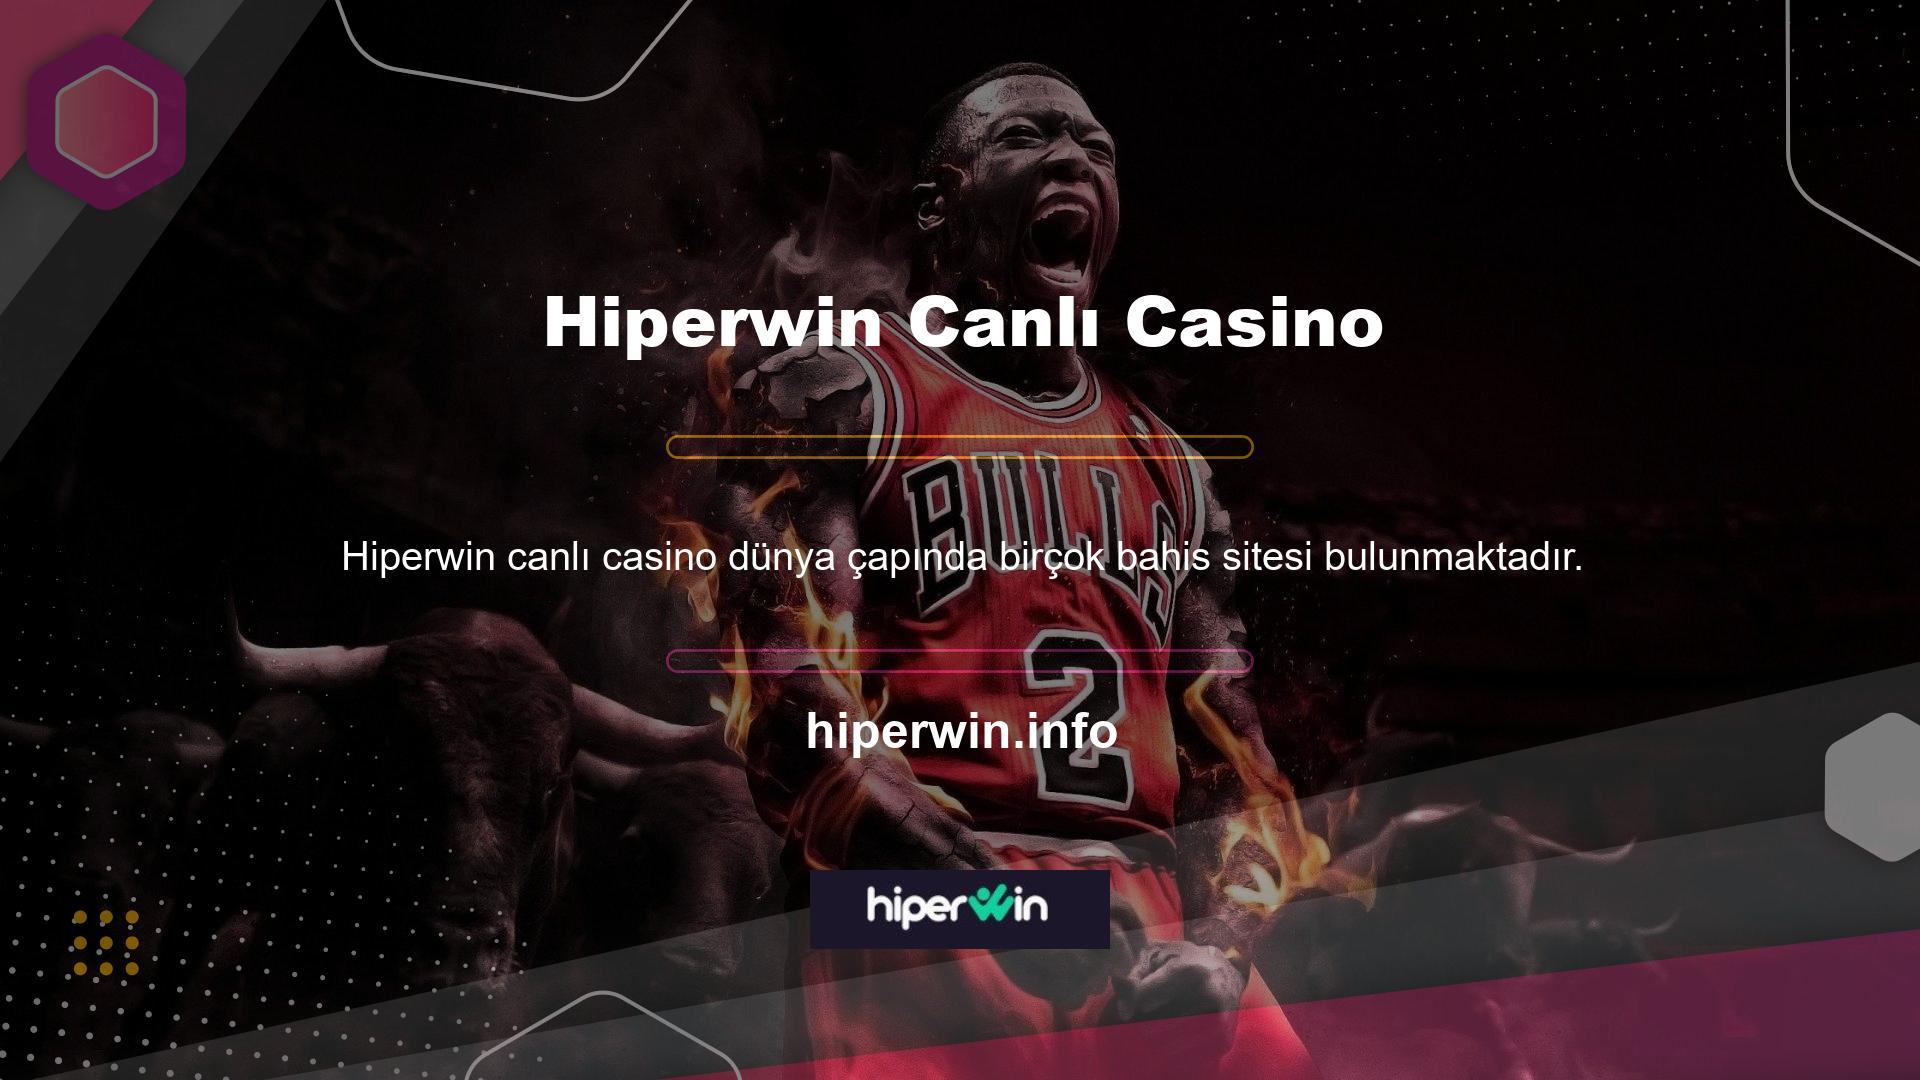 Hiperwin canlı casino indirim sitesi genellikle yüksek oranlarıyla adından söz ettirmektedir